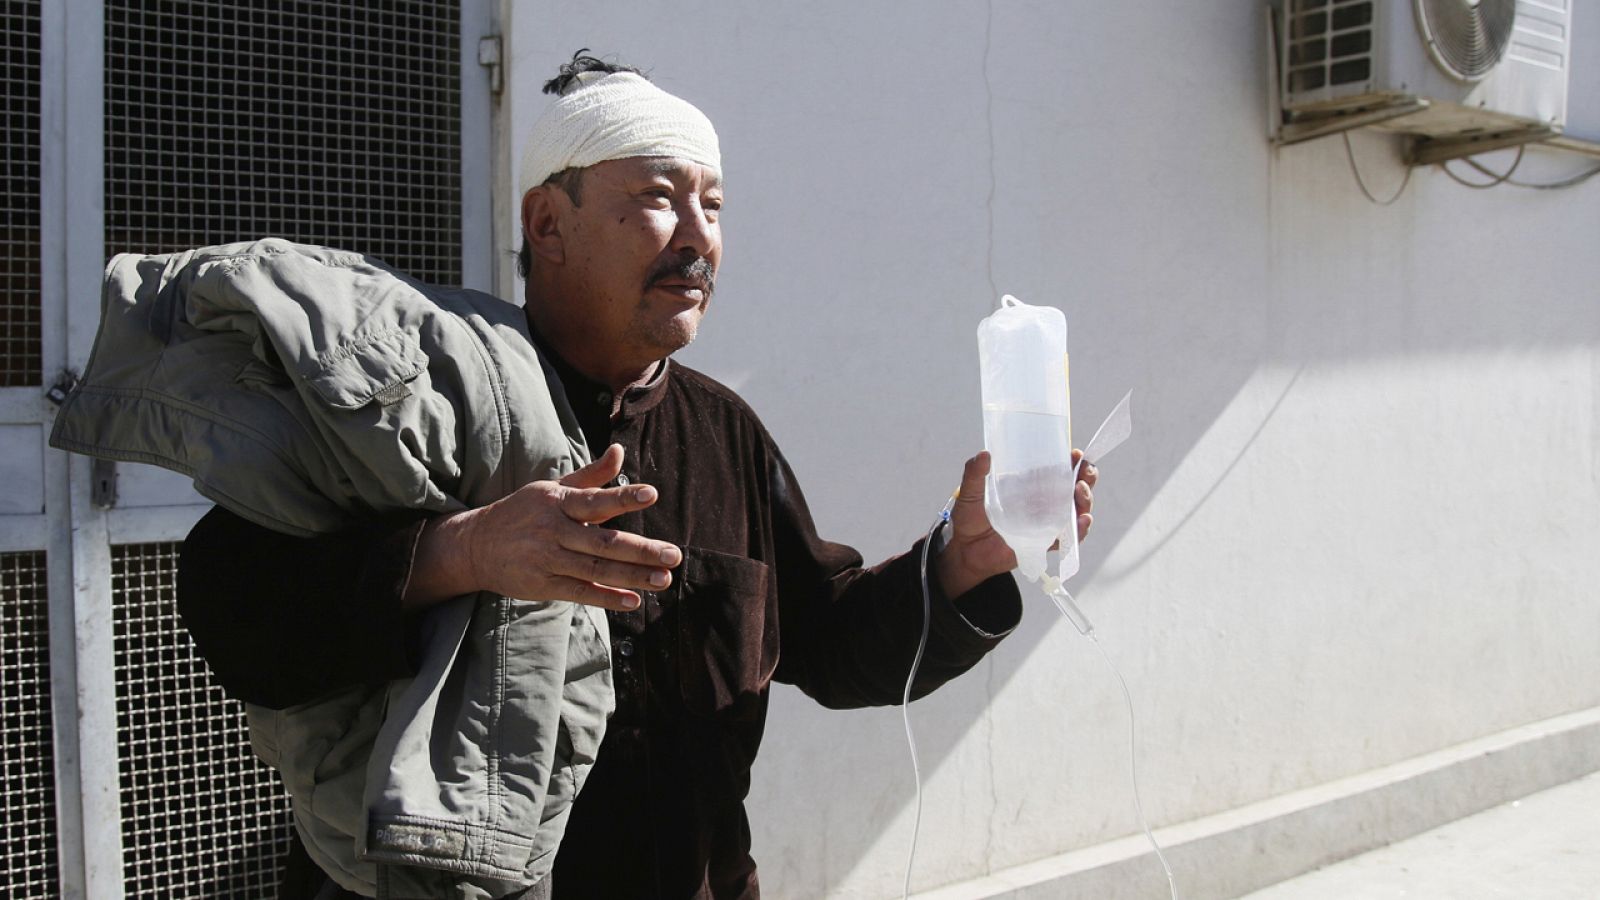 Un hombre herido en una explosión recibe asistencia médica en Kabul, Afganistán